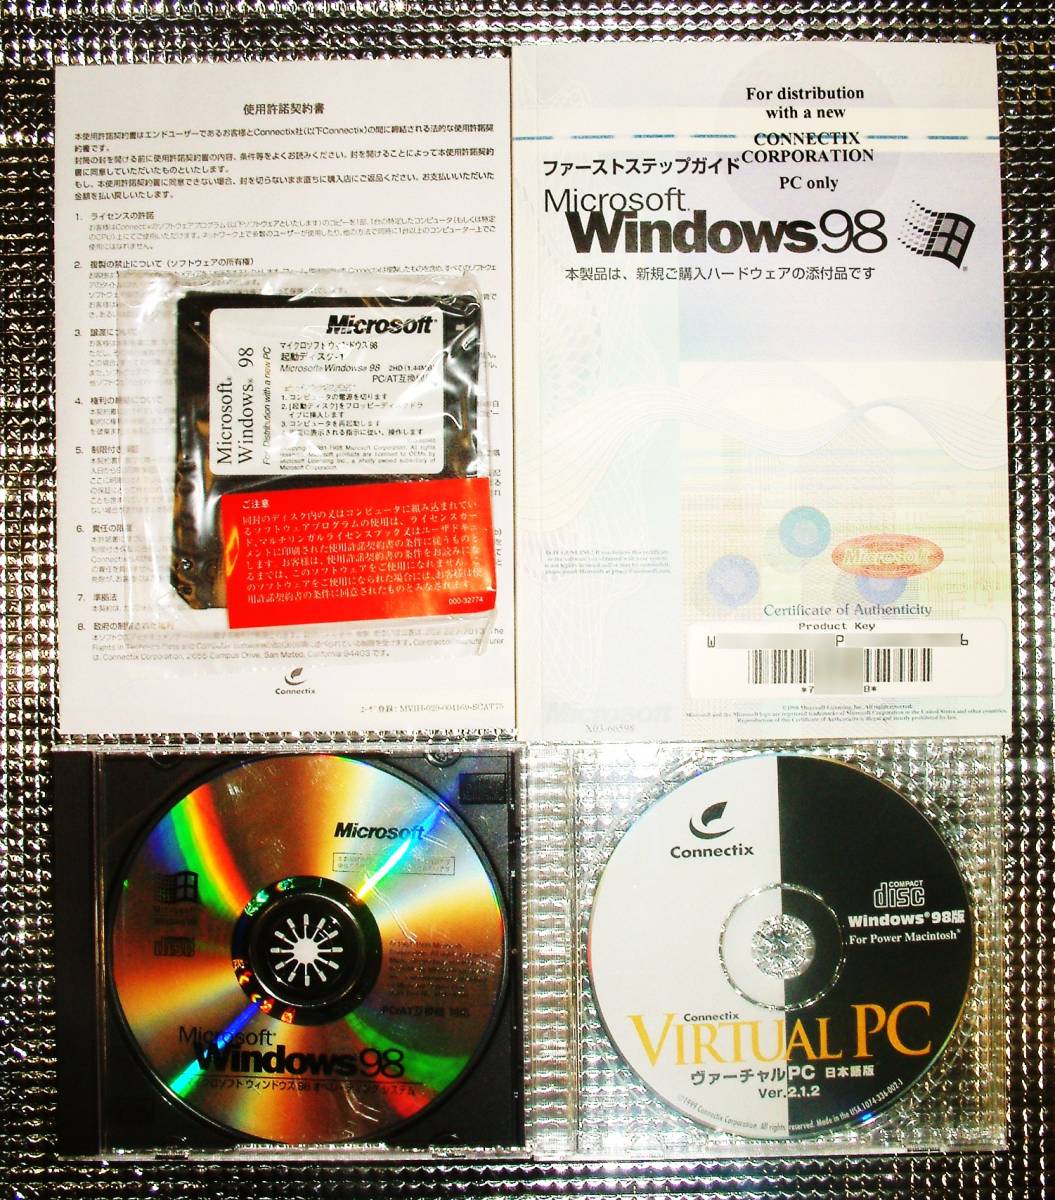 海外正規品激安通販 【3688】 Microsoft Virtual PC v2.1 for Power Macintosh with Windows98 ヴァーチャルPC 仮想化ソフト 仮想マシーン マッキントッシュ用